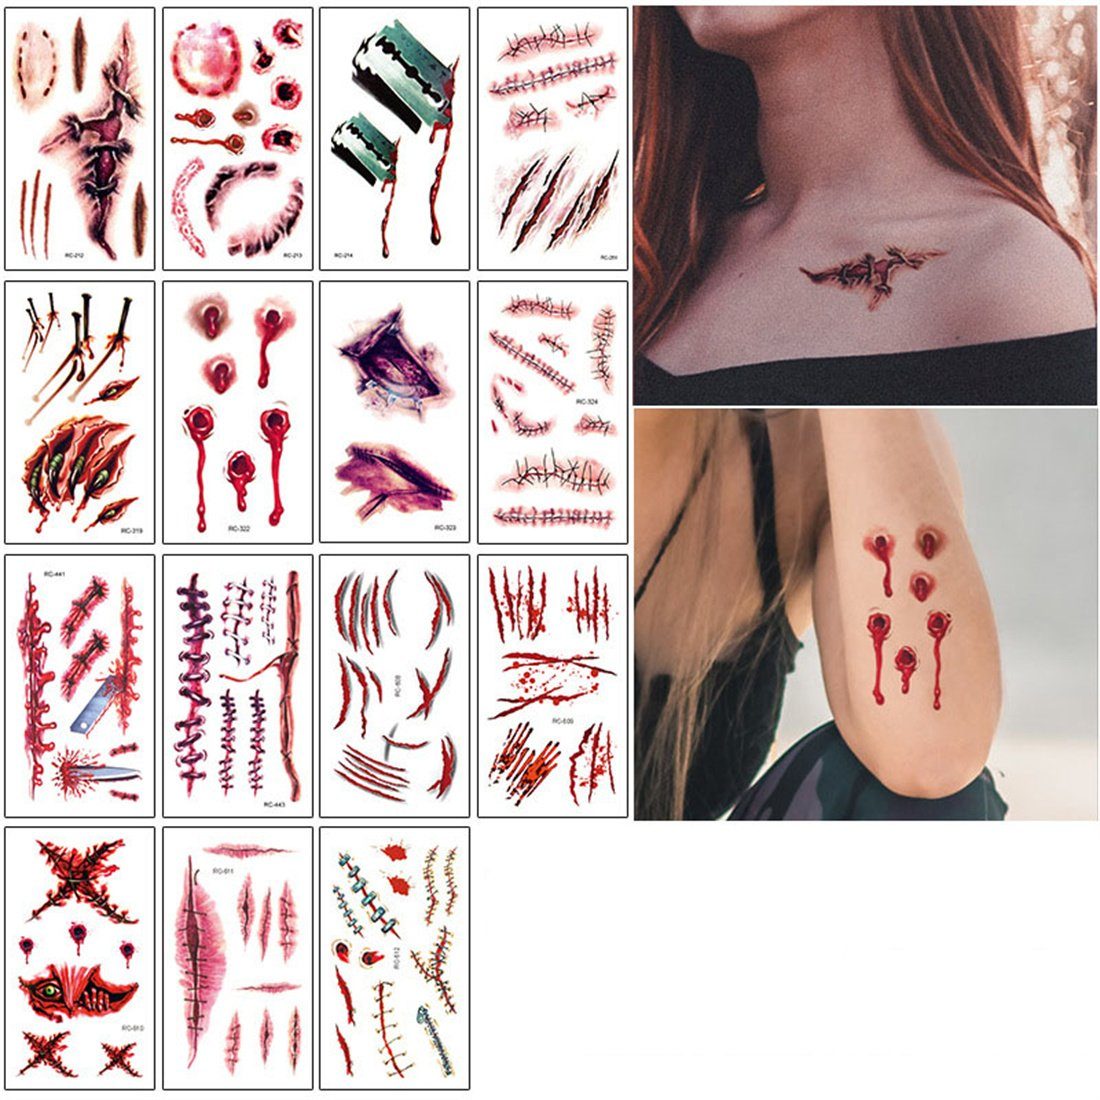 DÖRÖY Schmuck-Tattoo Halloween Narben Tattoo Aufkleber 15 Stück, Horror Tattoo Aufkleber. A( 15 Stück) | Schmuck-Tattoos